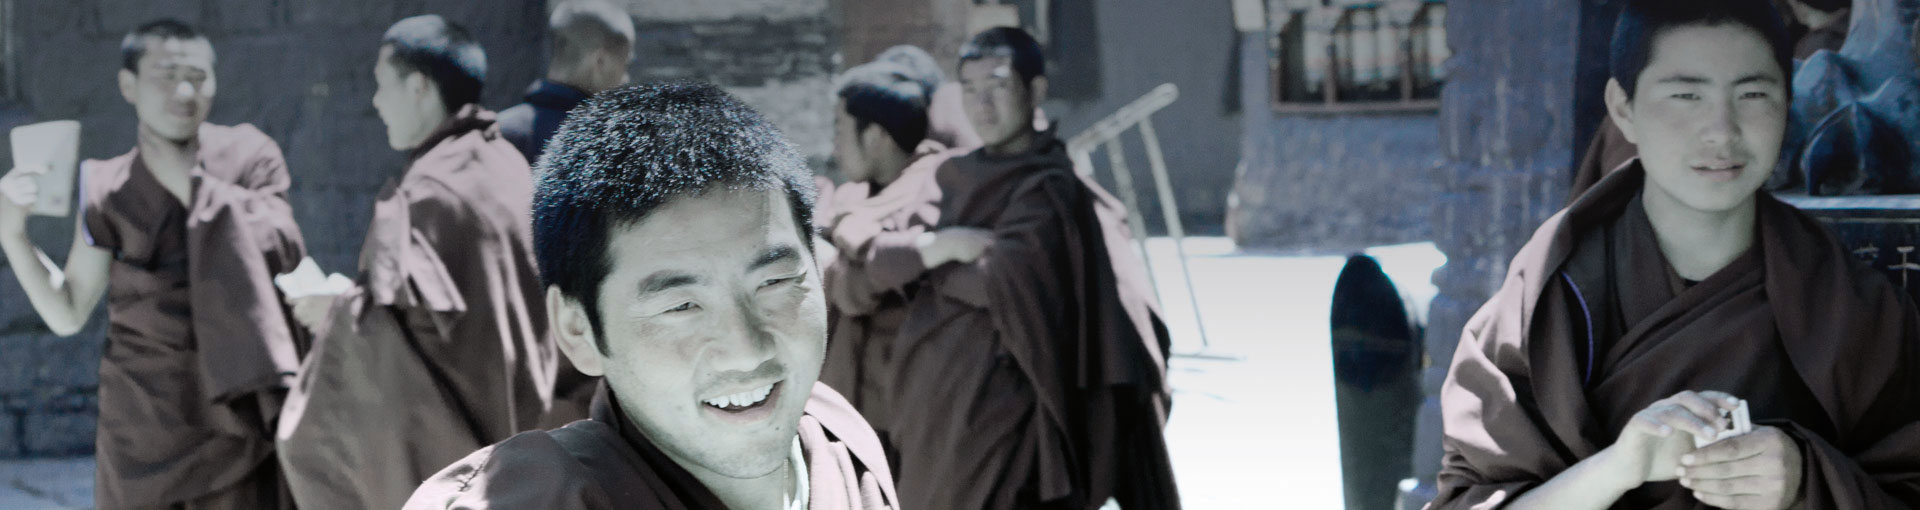 Tibet smile monk element film